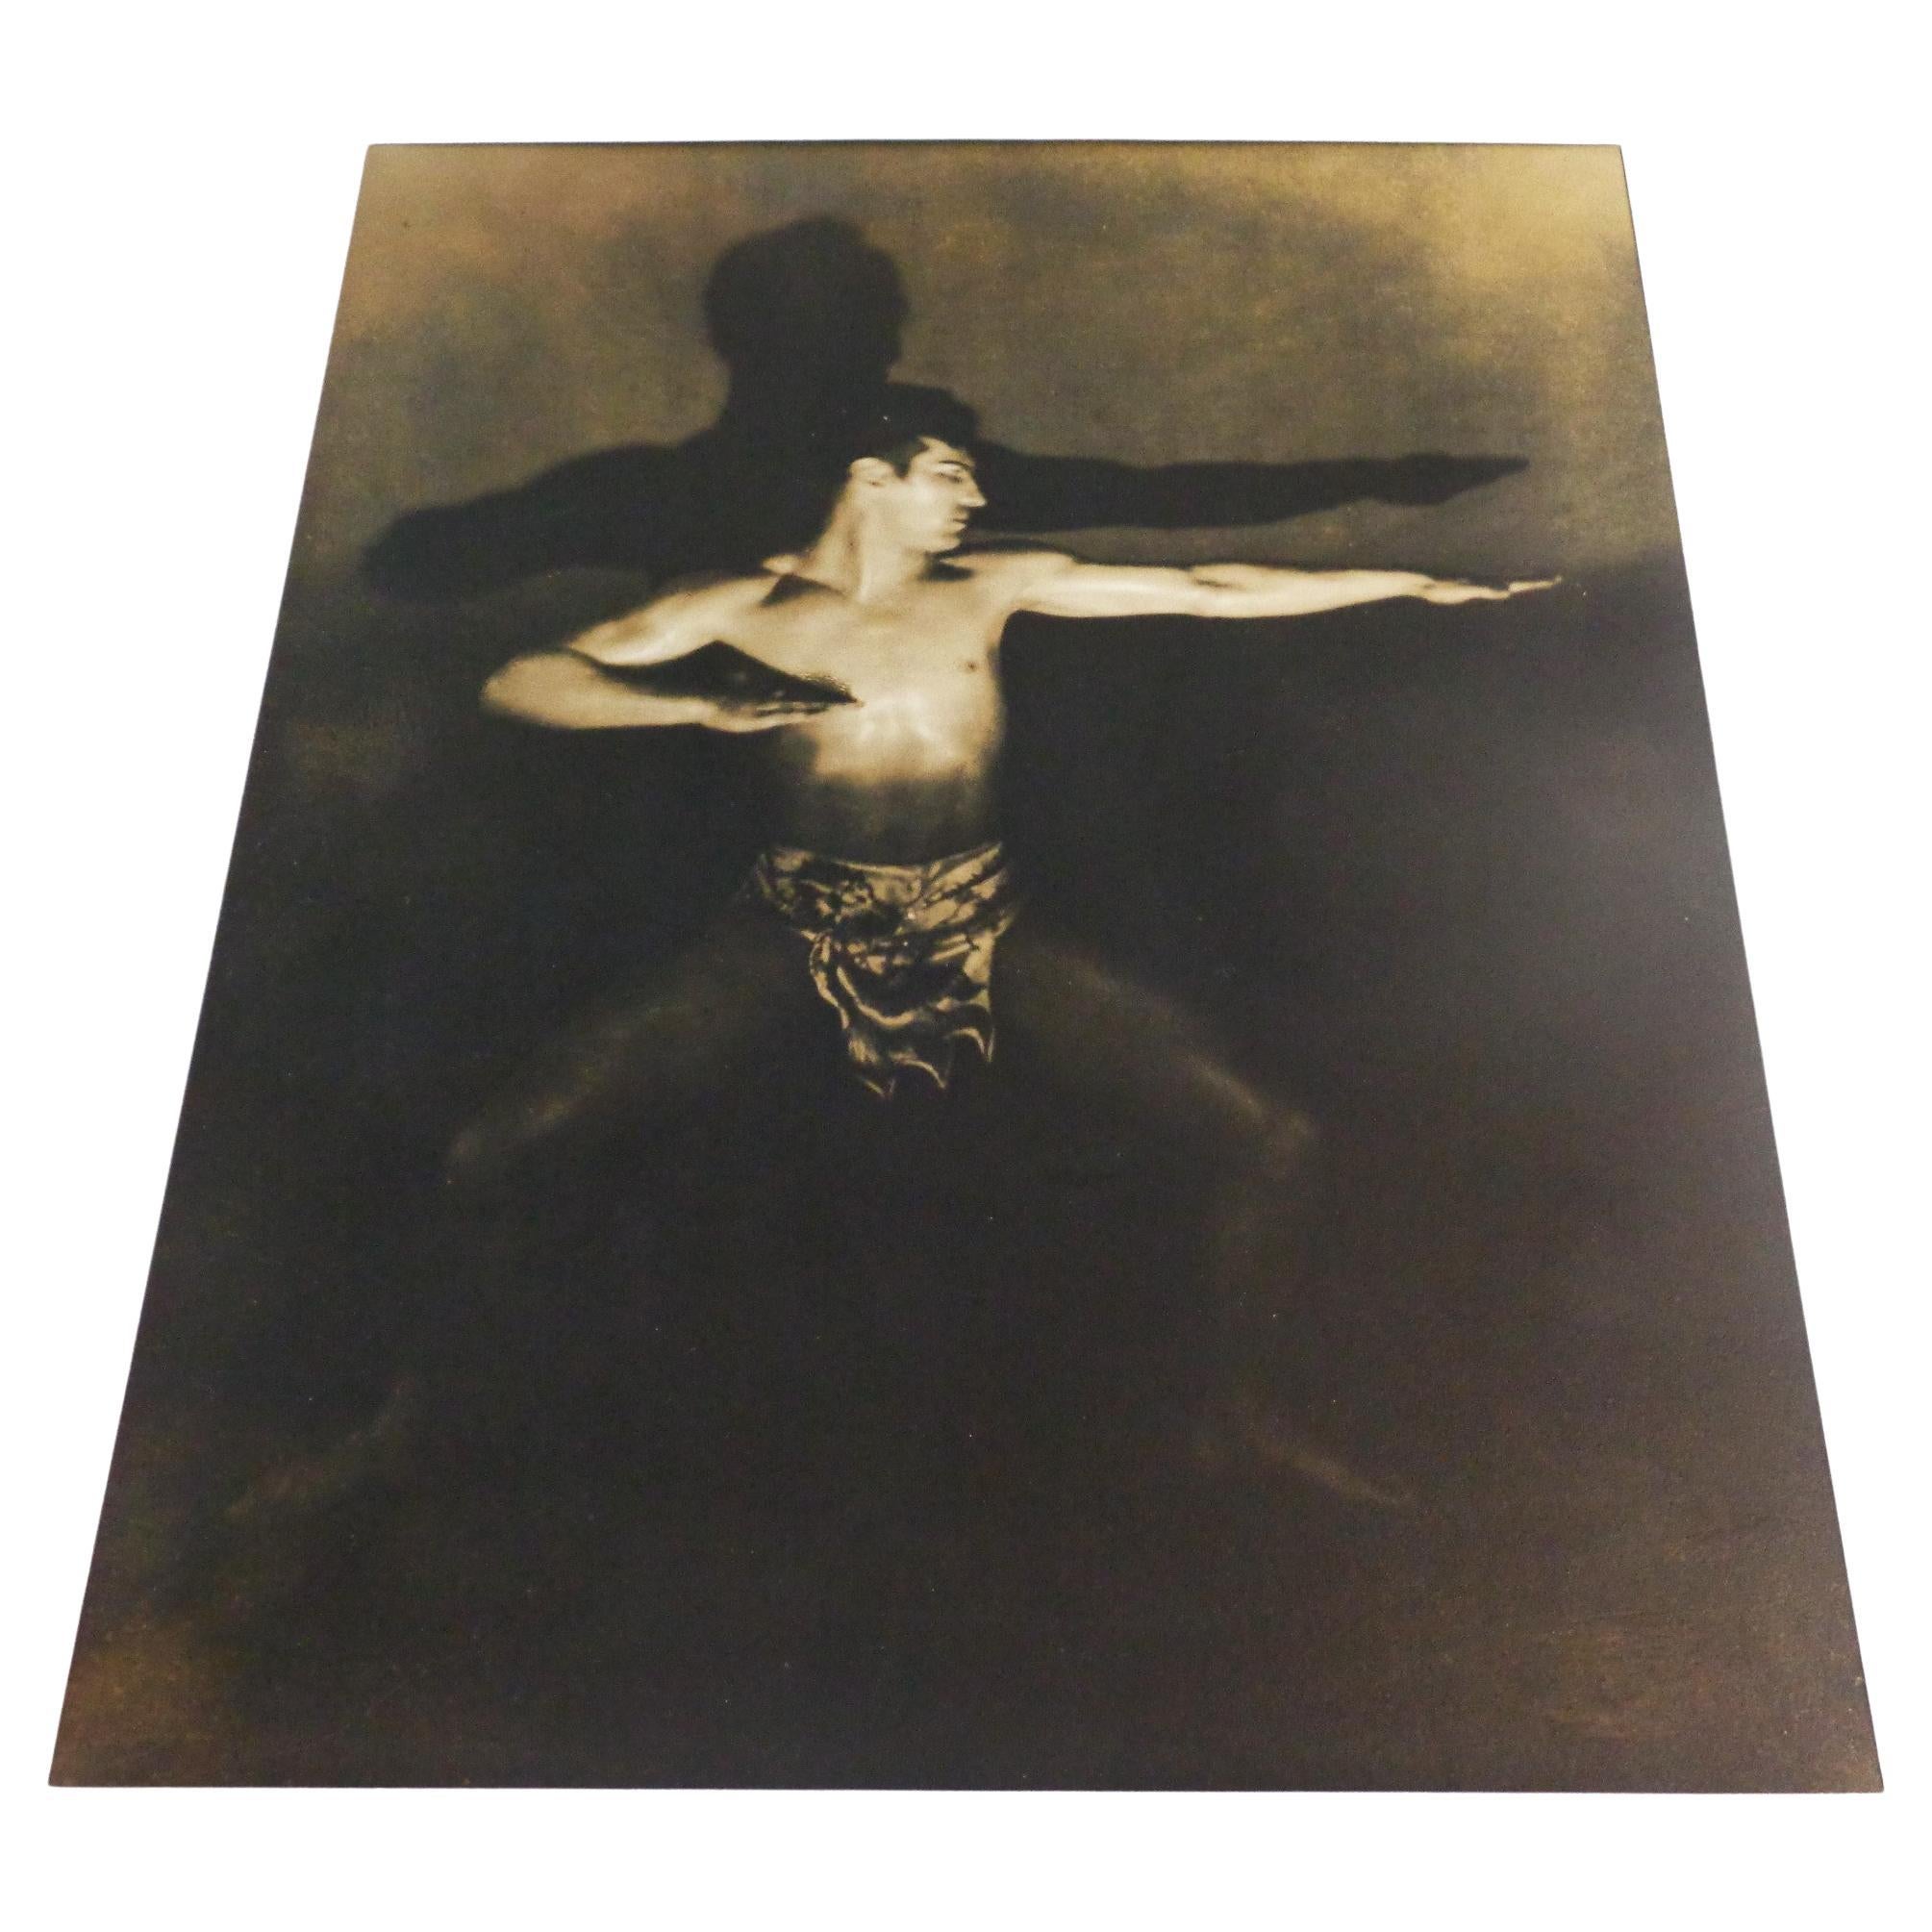 Photographie picturale nu masculin de couleur sépia à impression gélatine argentique, 1900-1910